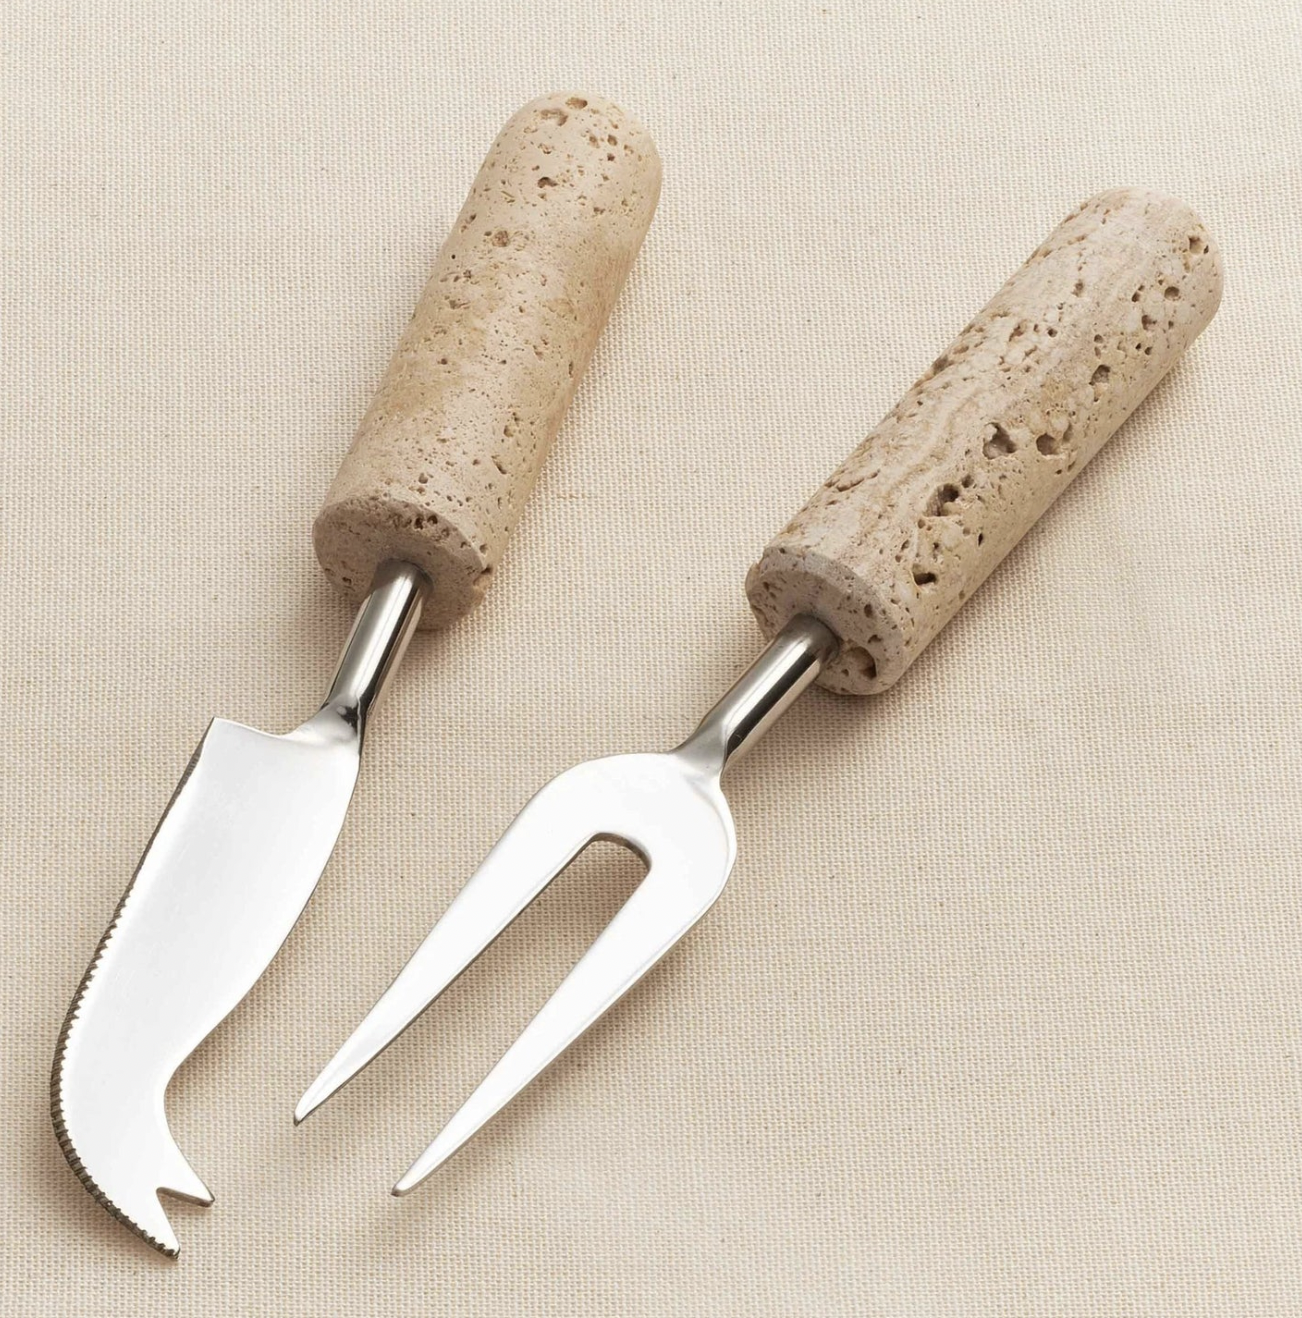 Marbella cheese knives set